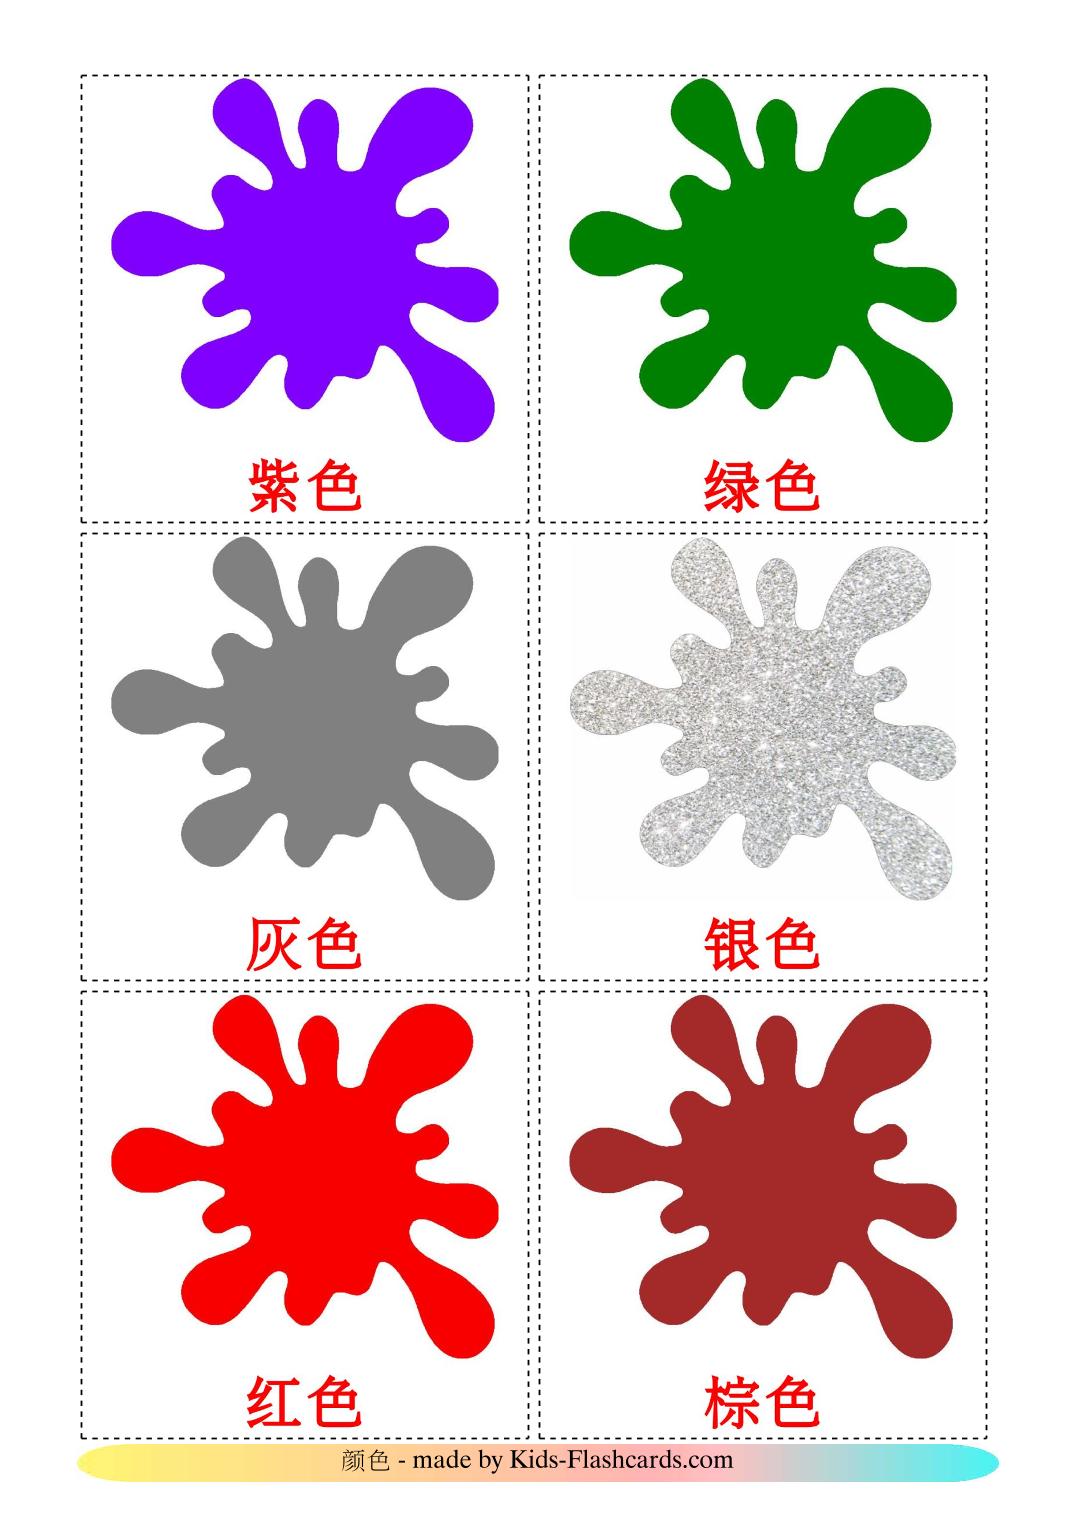 Farben - 12 kostenlose, druckbare Chinesisch(Vereinfacht) Flashcards 